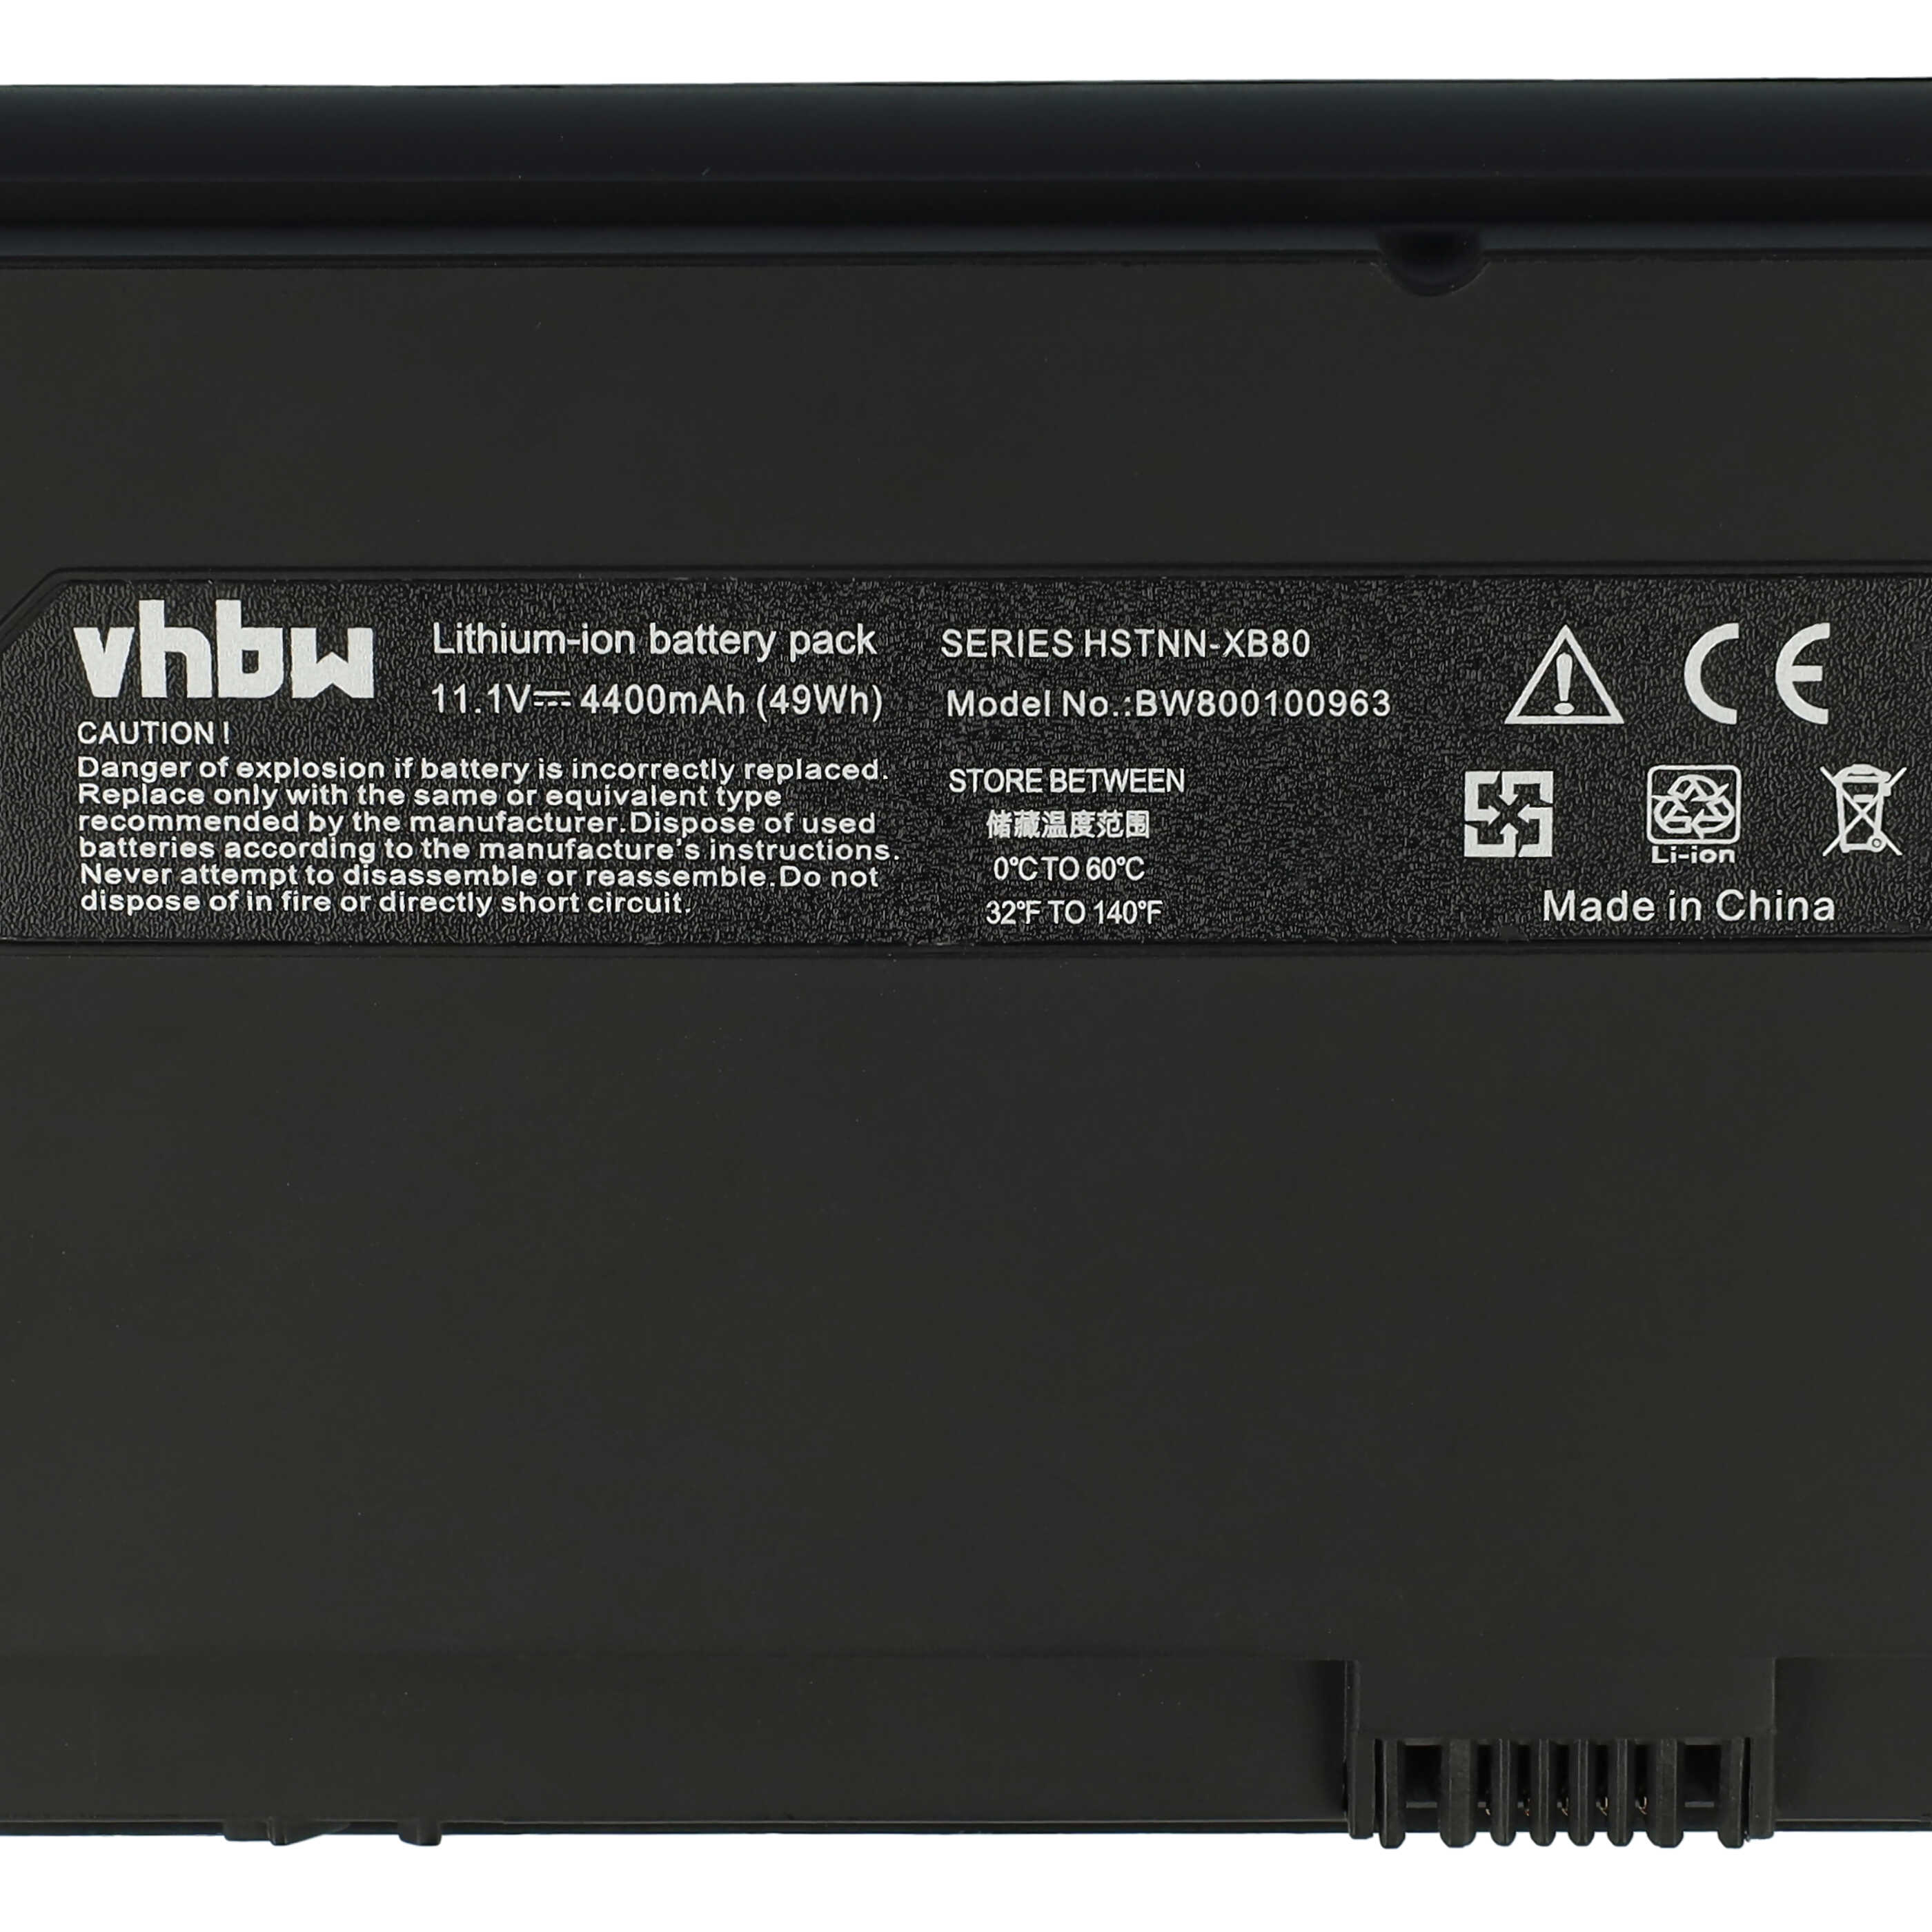 Batterie remplace HP FZ441AA#UUF, 493529-371, HSTNN-157C pour ordinateur portable - 4400mAh 11,1V Li-ion, noir